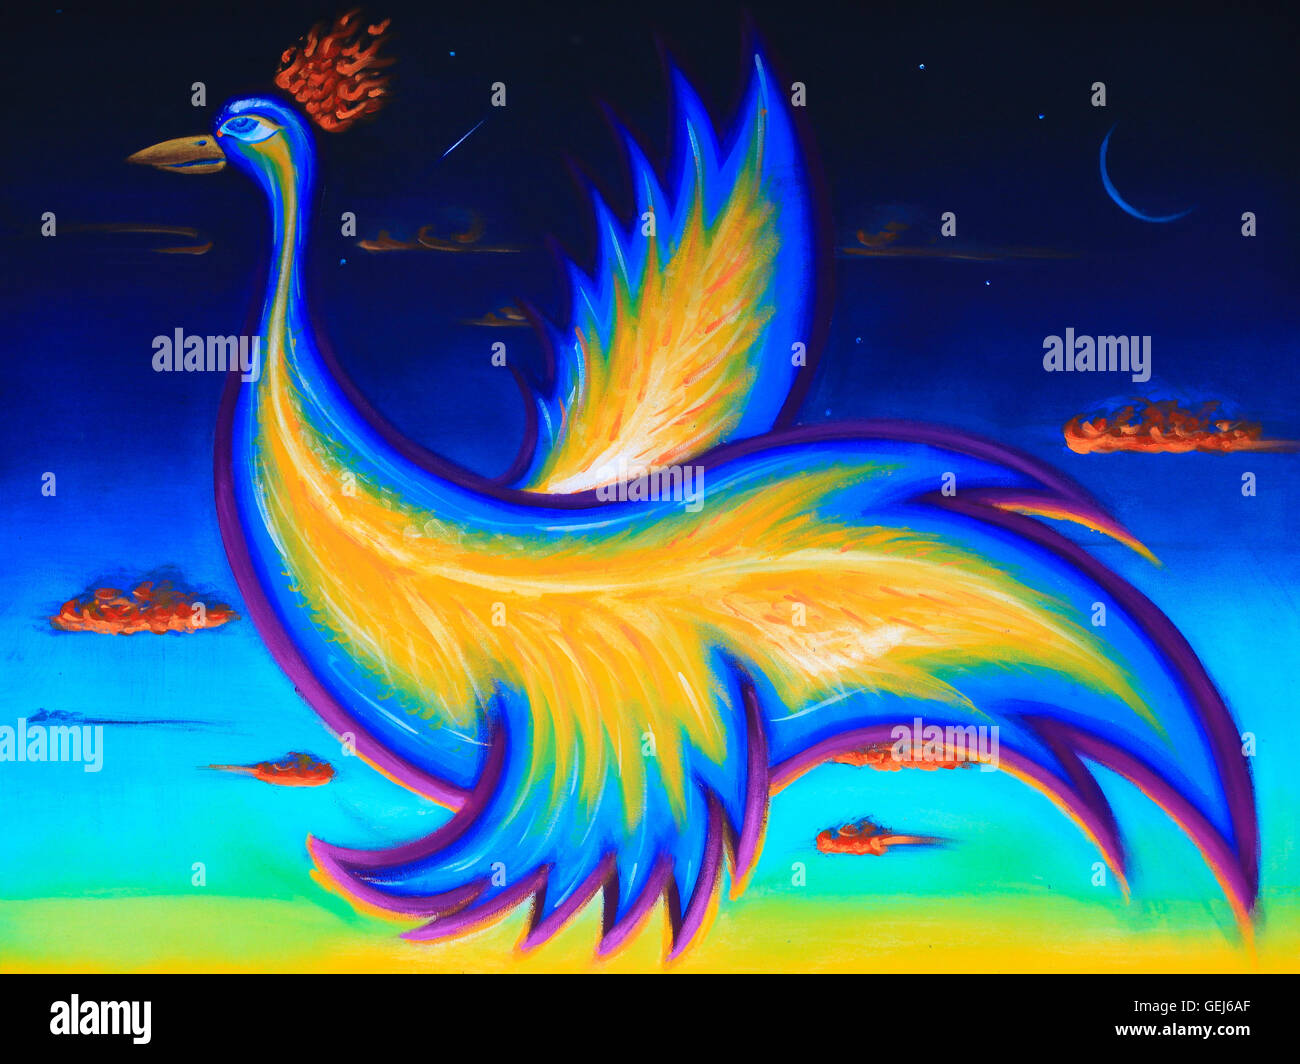 L'Art original illustration, peinture acrylique de phoenix, oiseau volant dans le ciel nocturne. Image horizontale. Banque D'Images